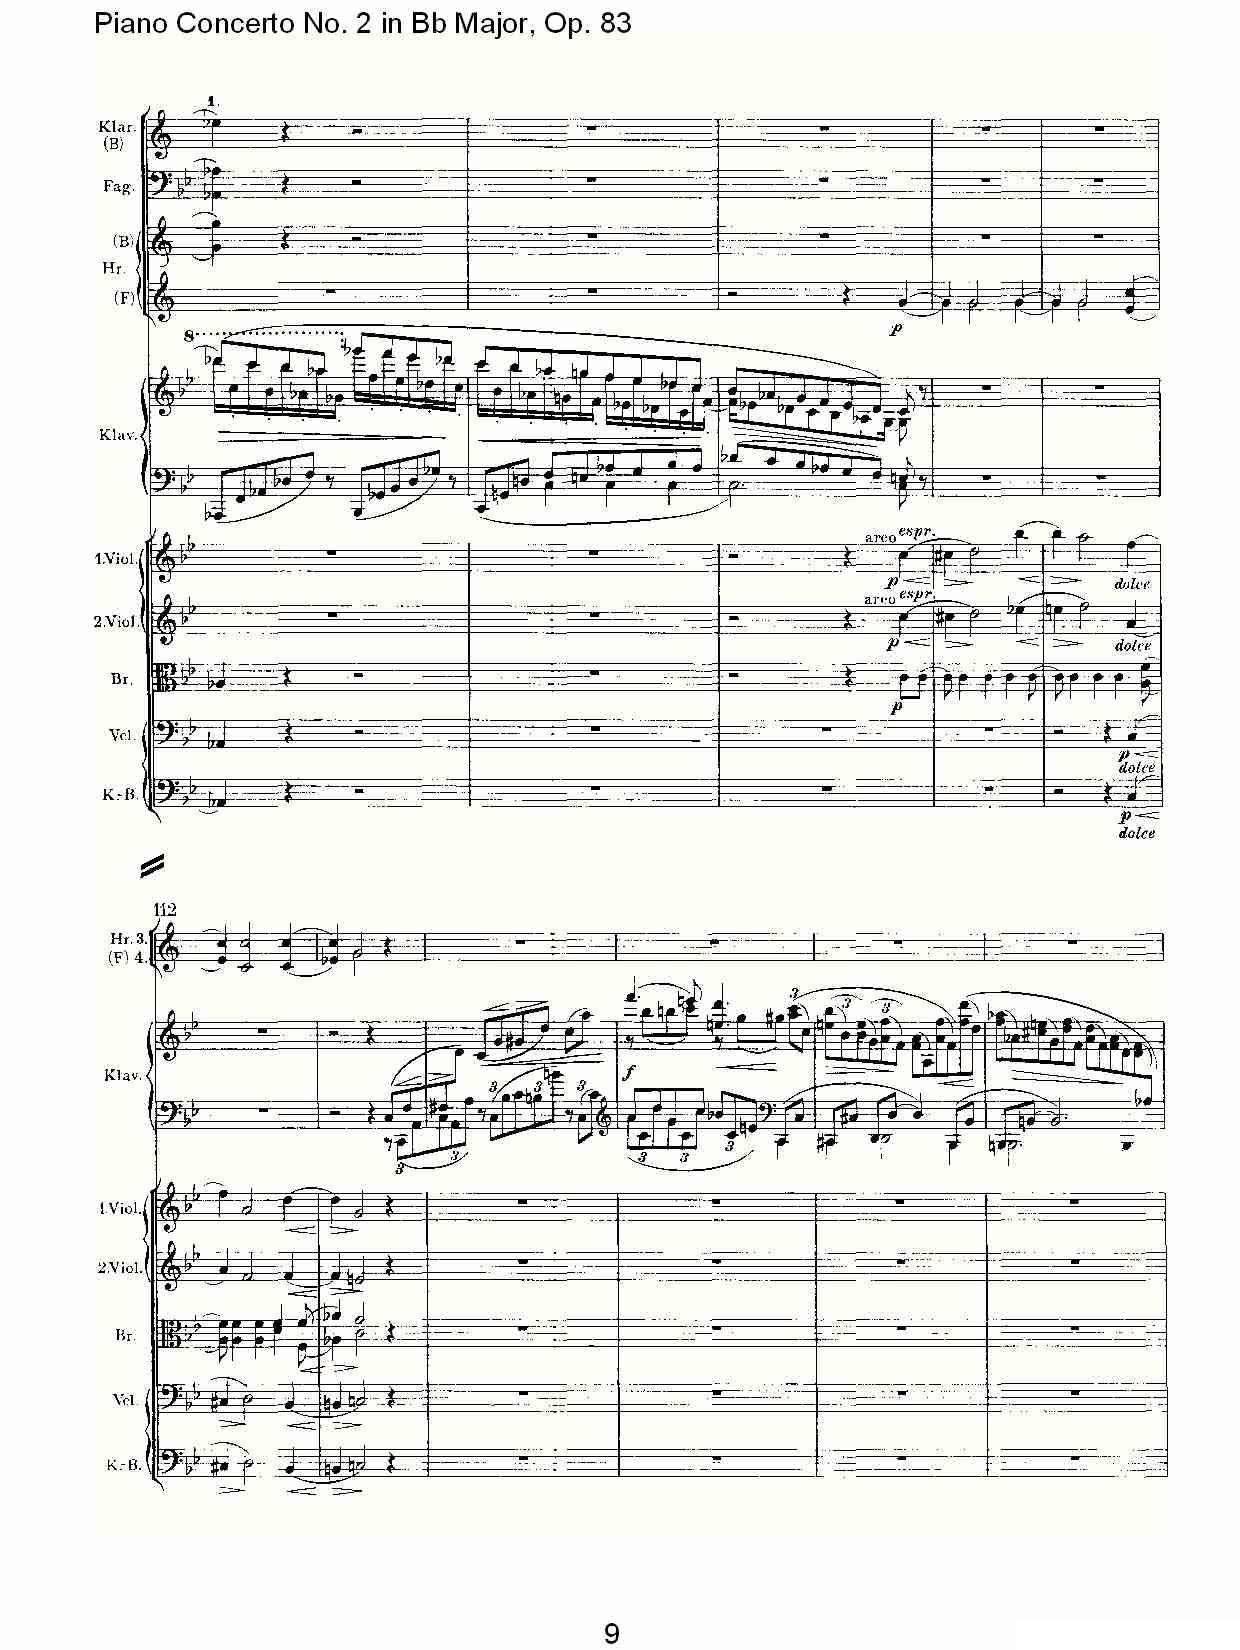 Bb大调钢琴第二协奏曲, Op.83第一乐章（一）钢琴曲谱（图10）